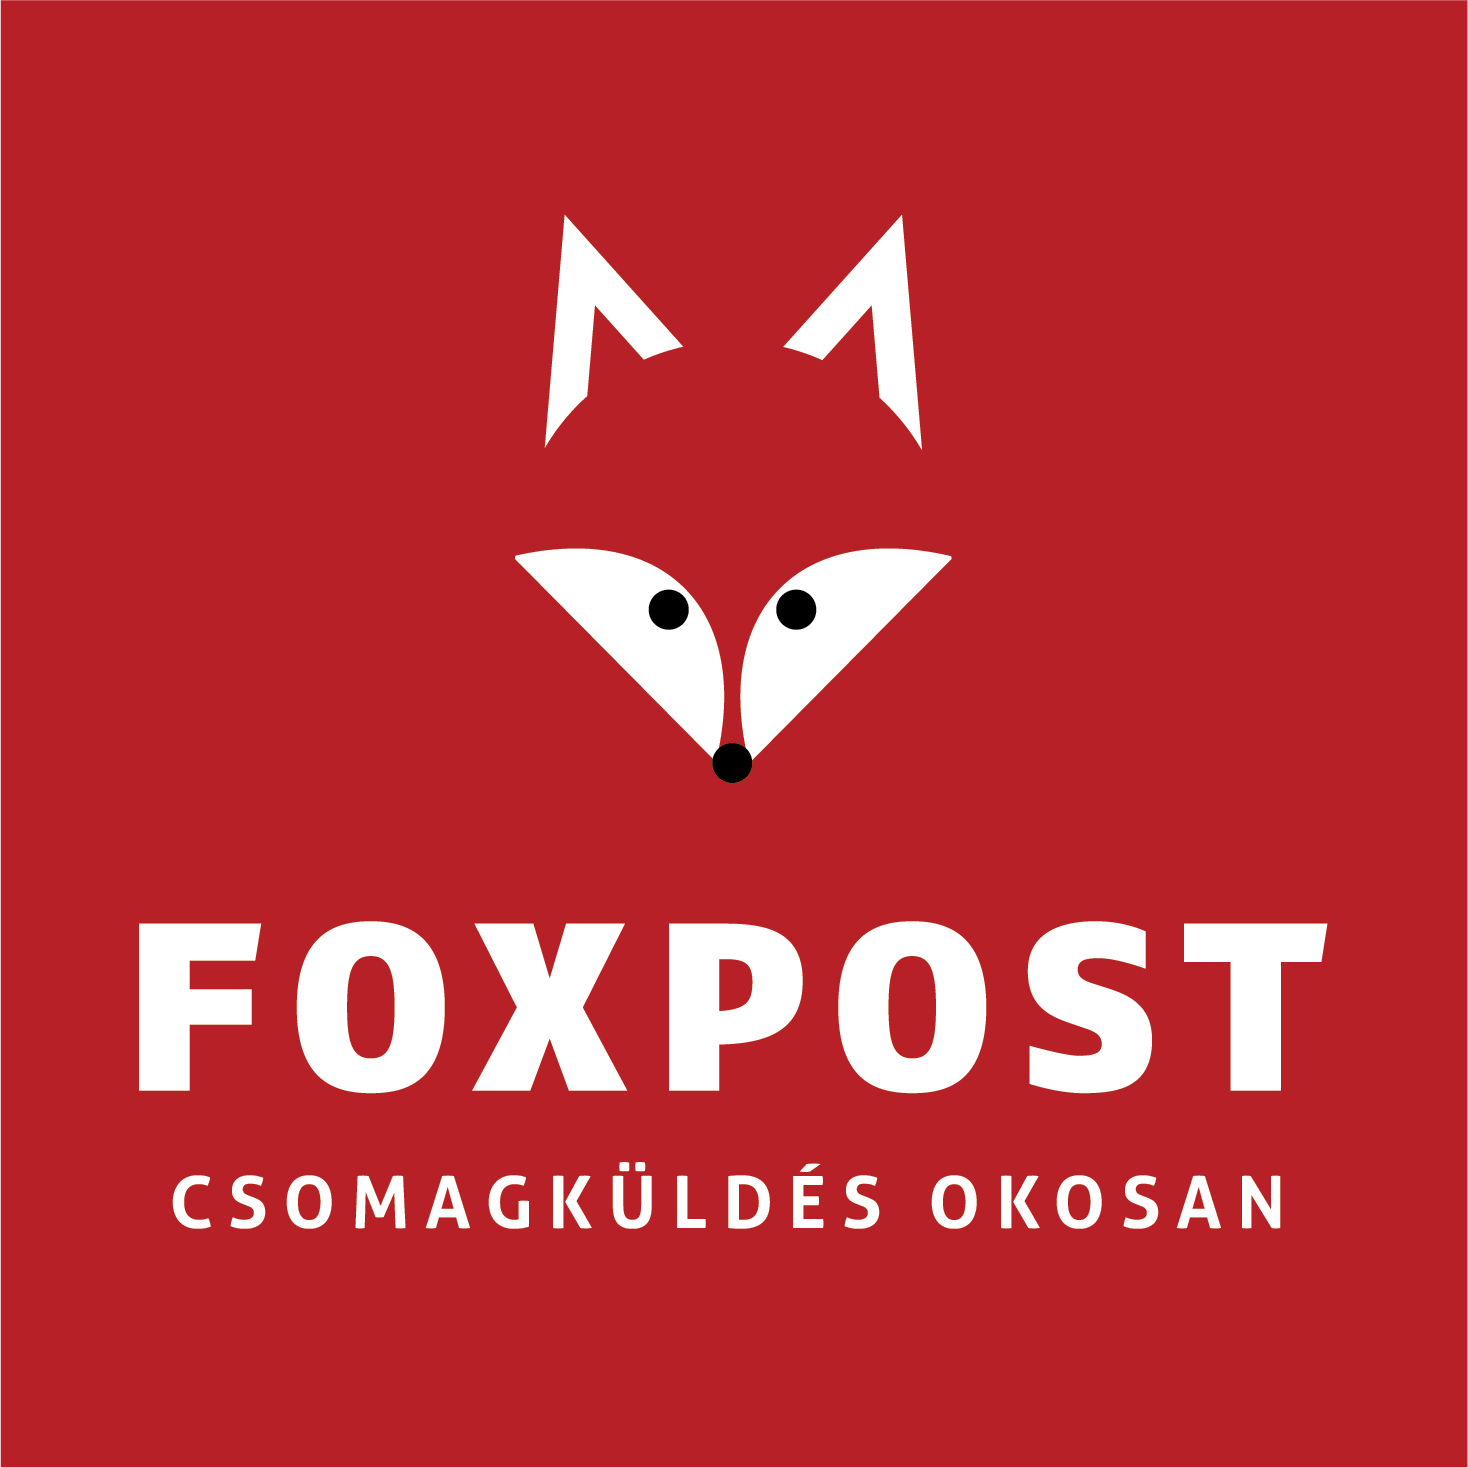 Foxpost csomagautómata